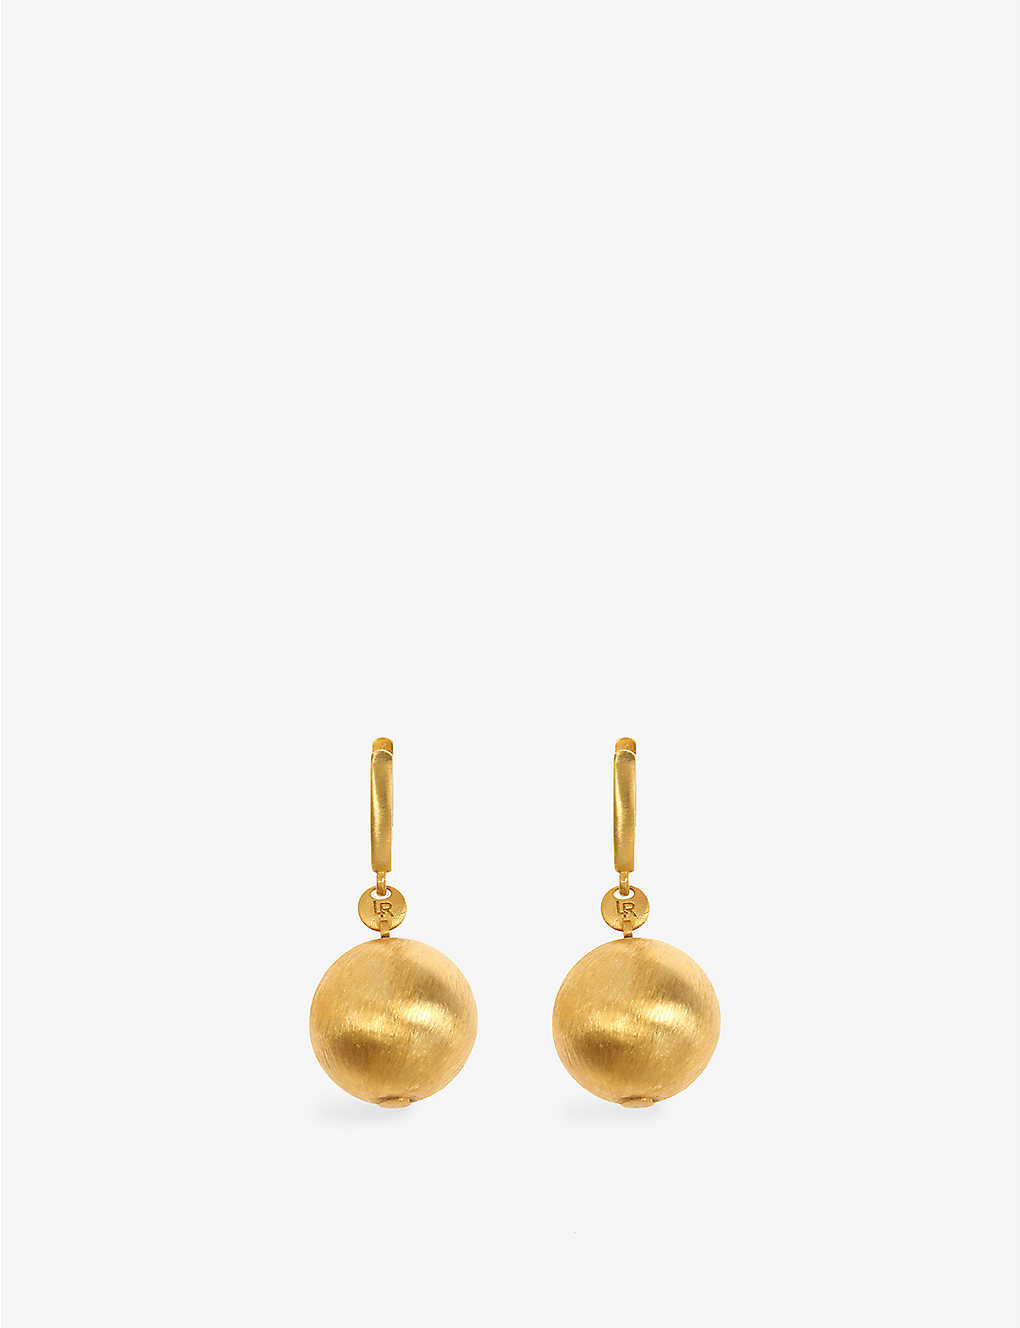 Lauren Rubinski Womens 14k Yellow Gold Brushed Ball 14ct Yellow-gold Earrings